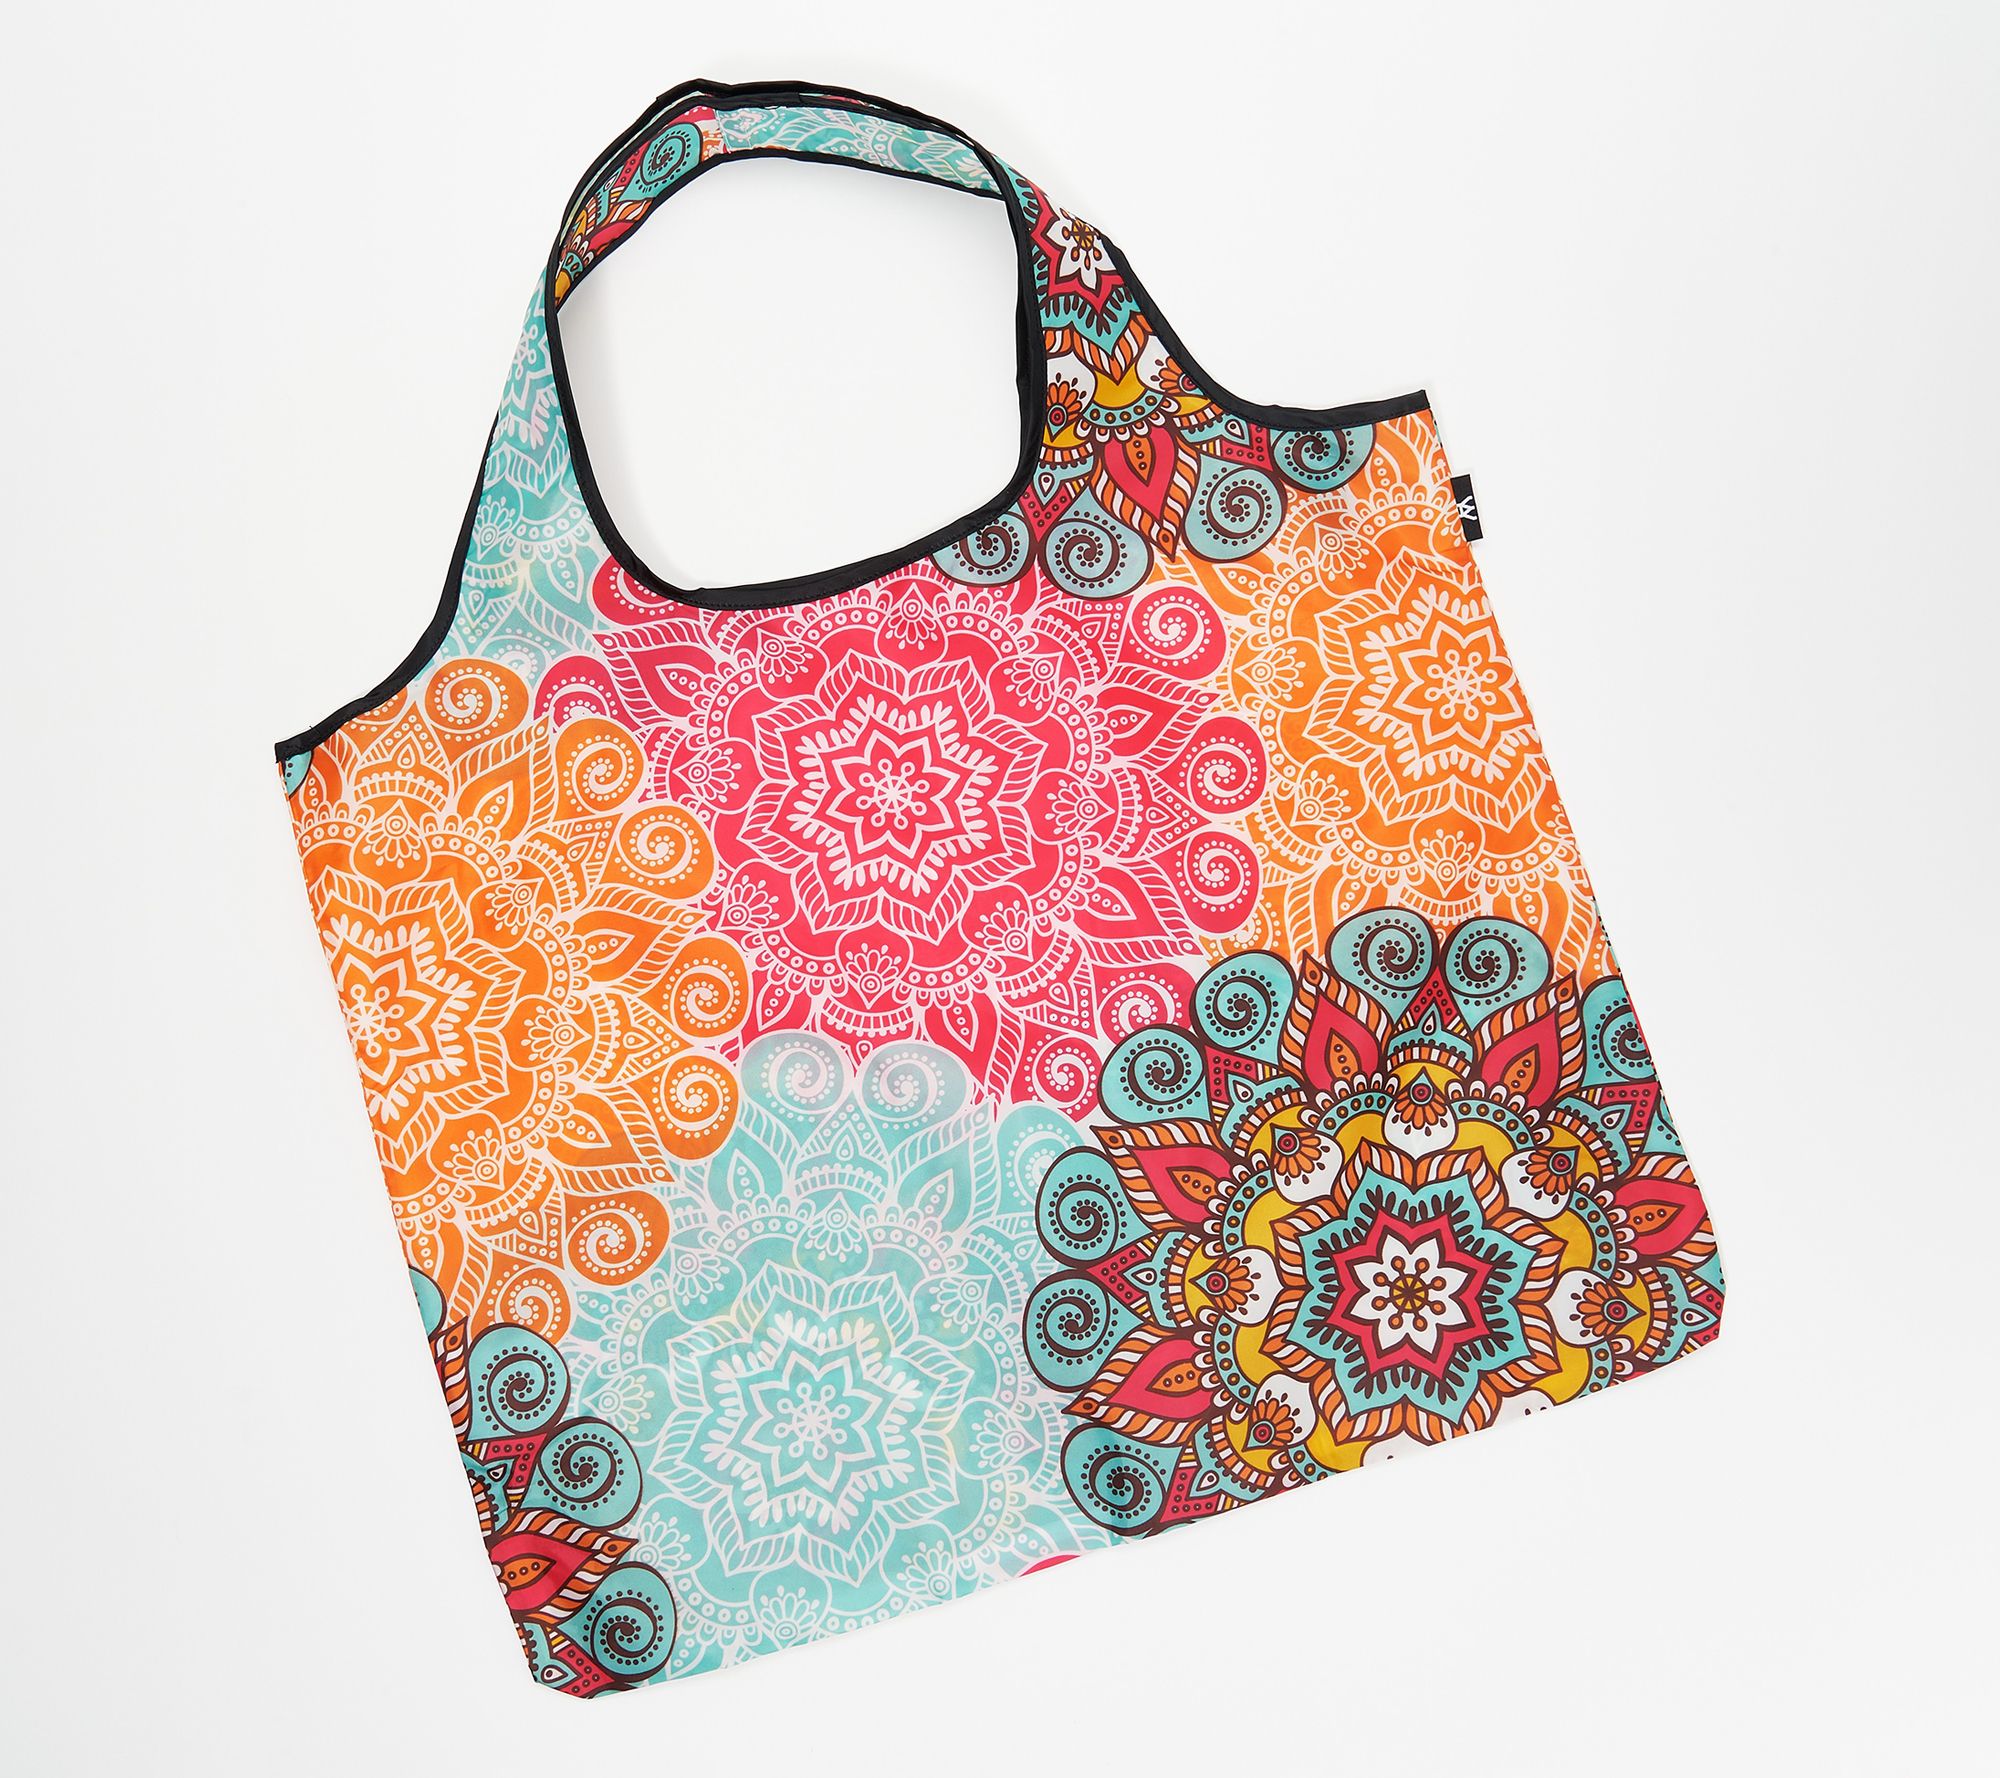 Washable Stylish High Quality Reusable Shopping Bags YaYbag JUMBO J4361 